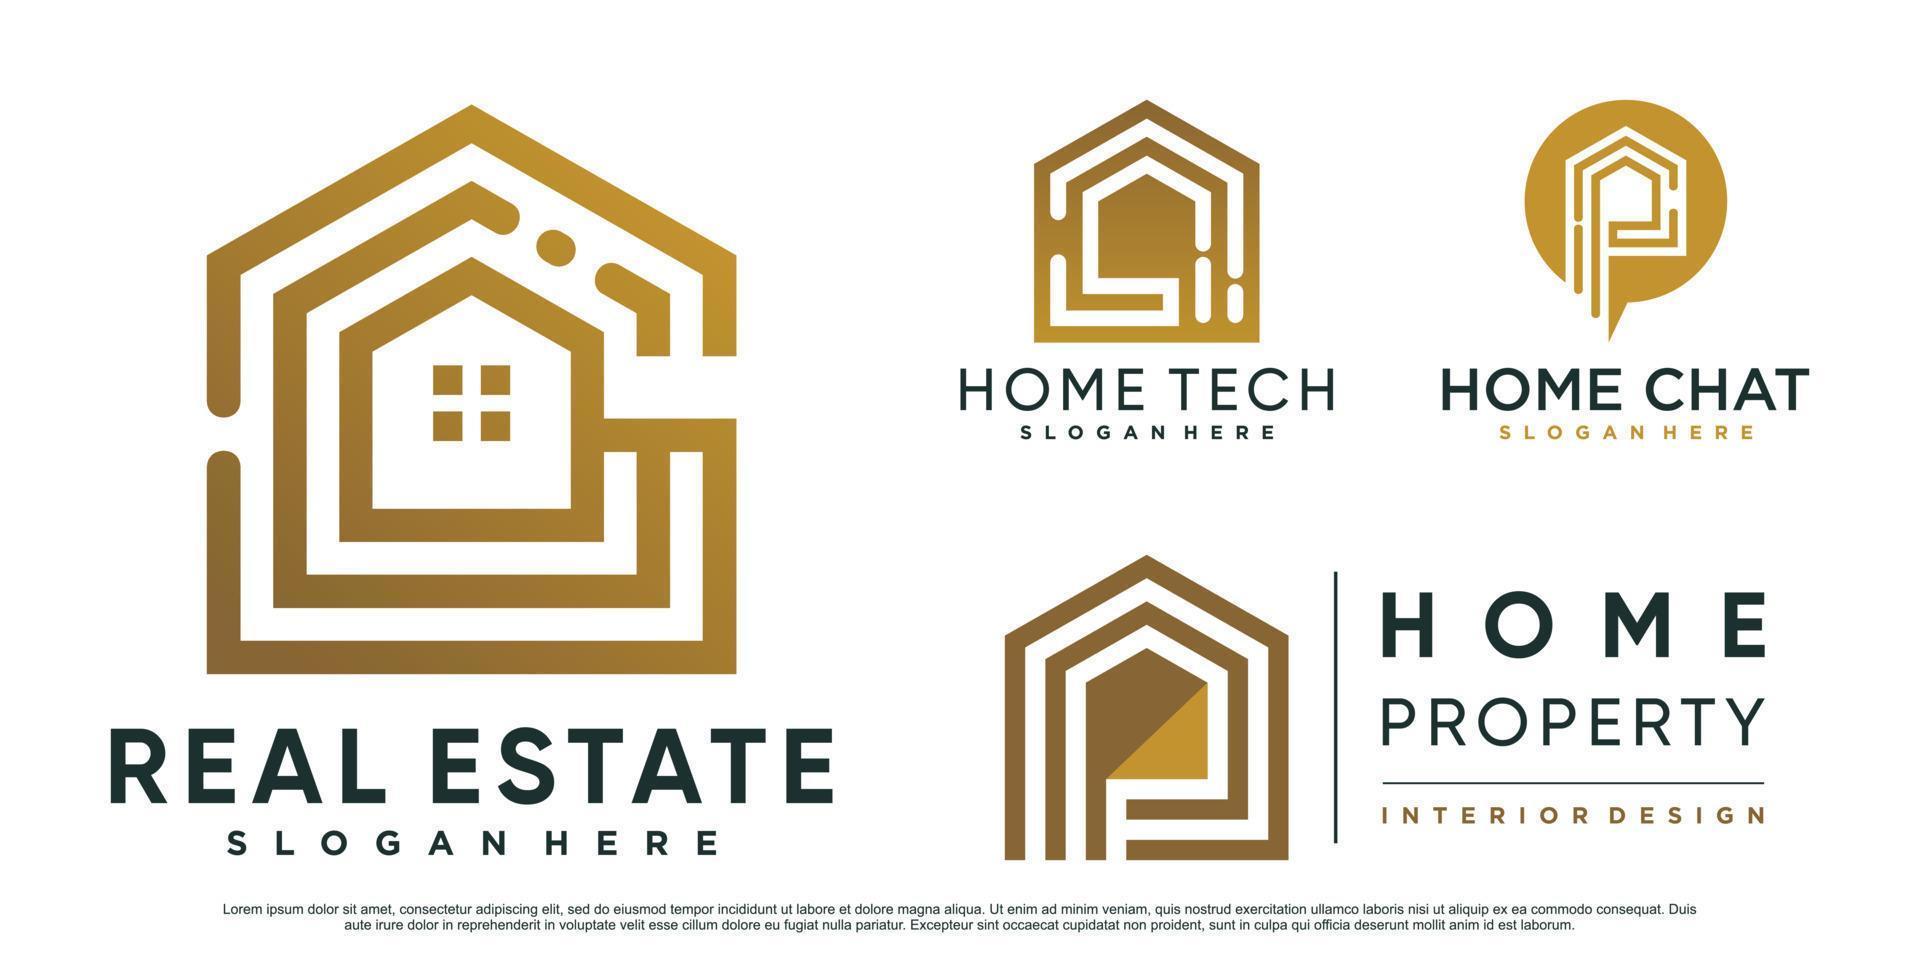 conjunto de inspiración de diseño de logotipo de bienes raíces para negocios con concepto moderno creativo vector premium